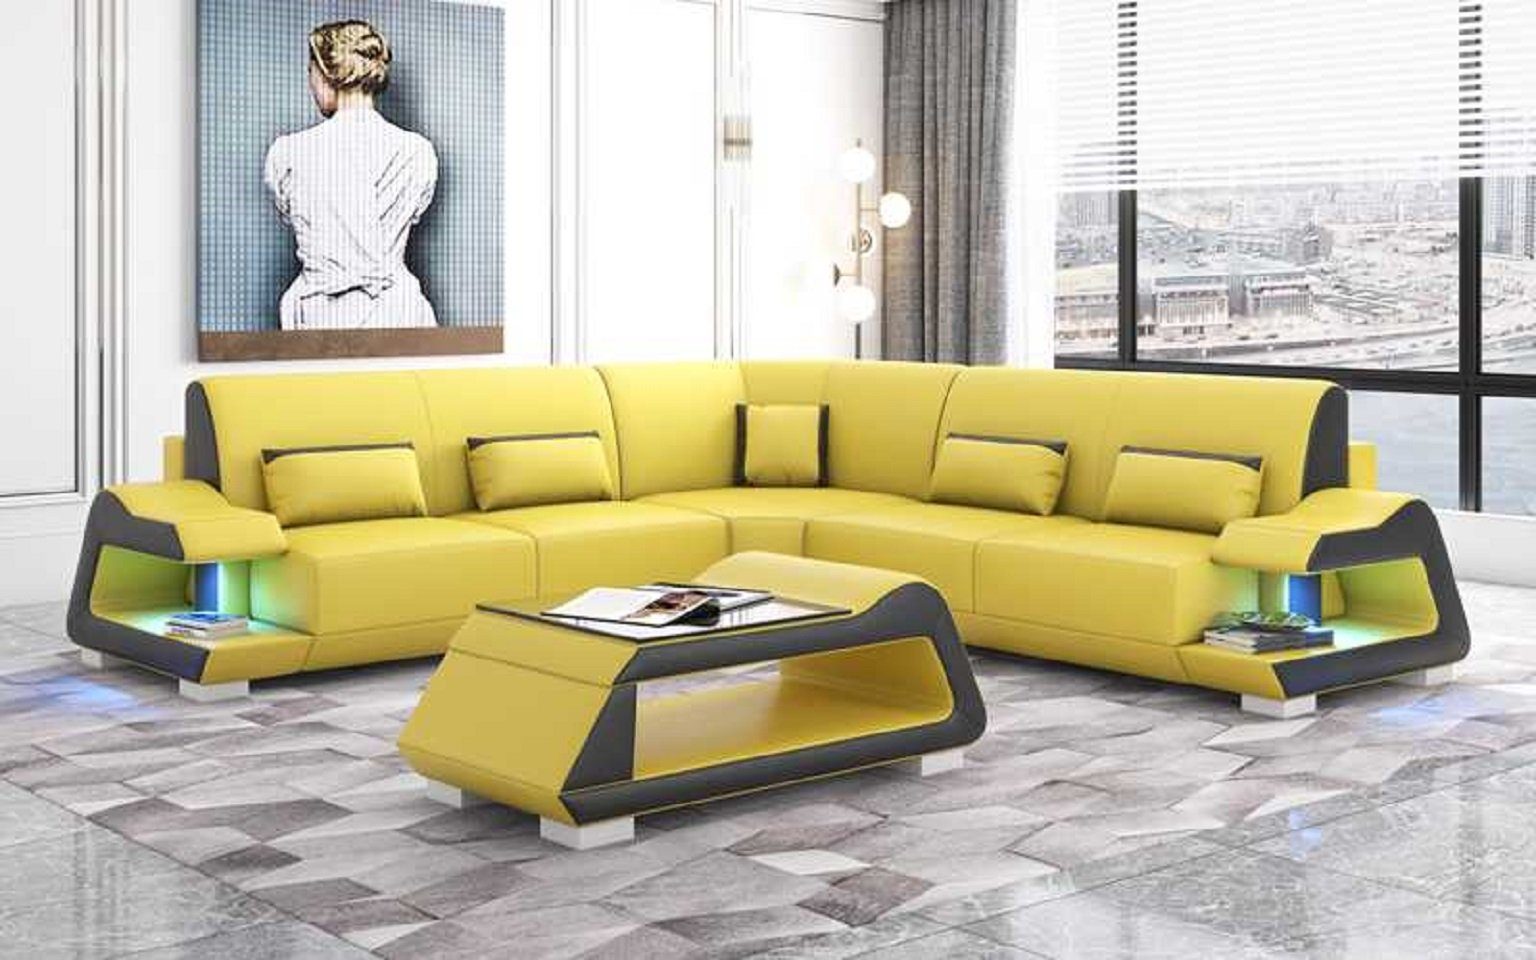 JVmoebel Ecksofa Luxus Ecksofa L Form Sofa Eckgarnitur Wohnzimmer Sofas, 3 Teile, Made in Europe Gelb